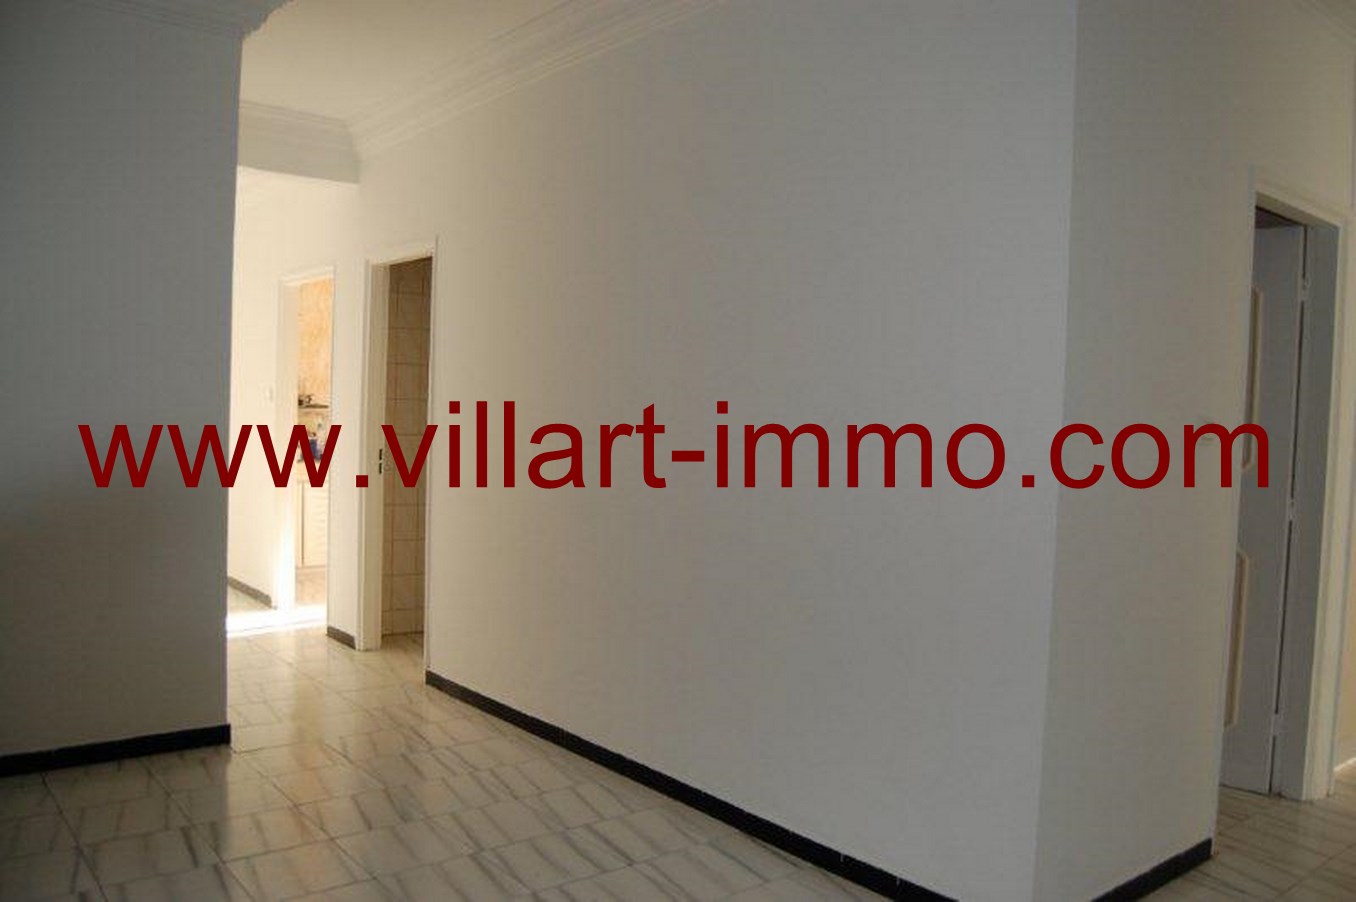 1-Location-Appartement-non meublé-Tanger-entrée-L615-Villart-immo